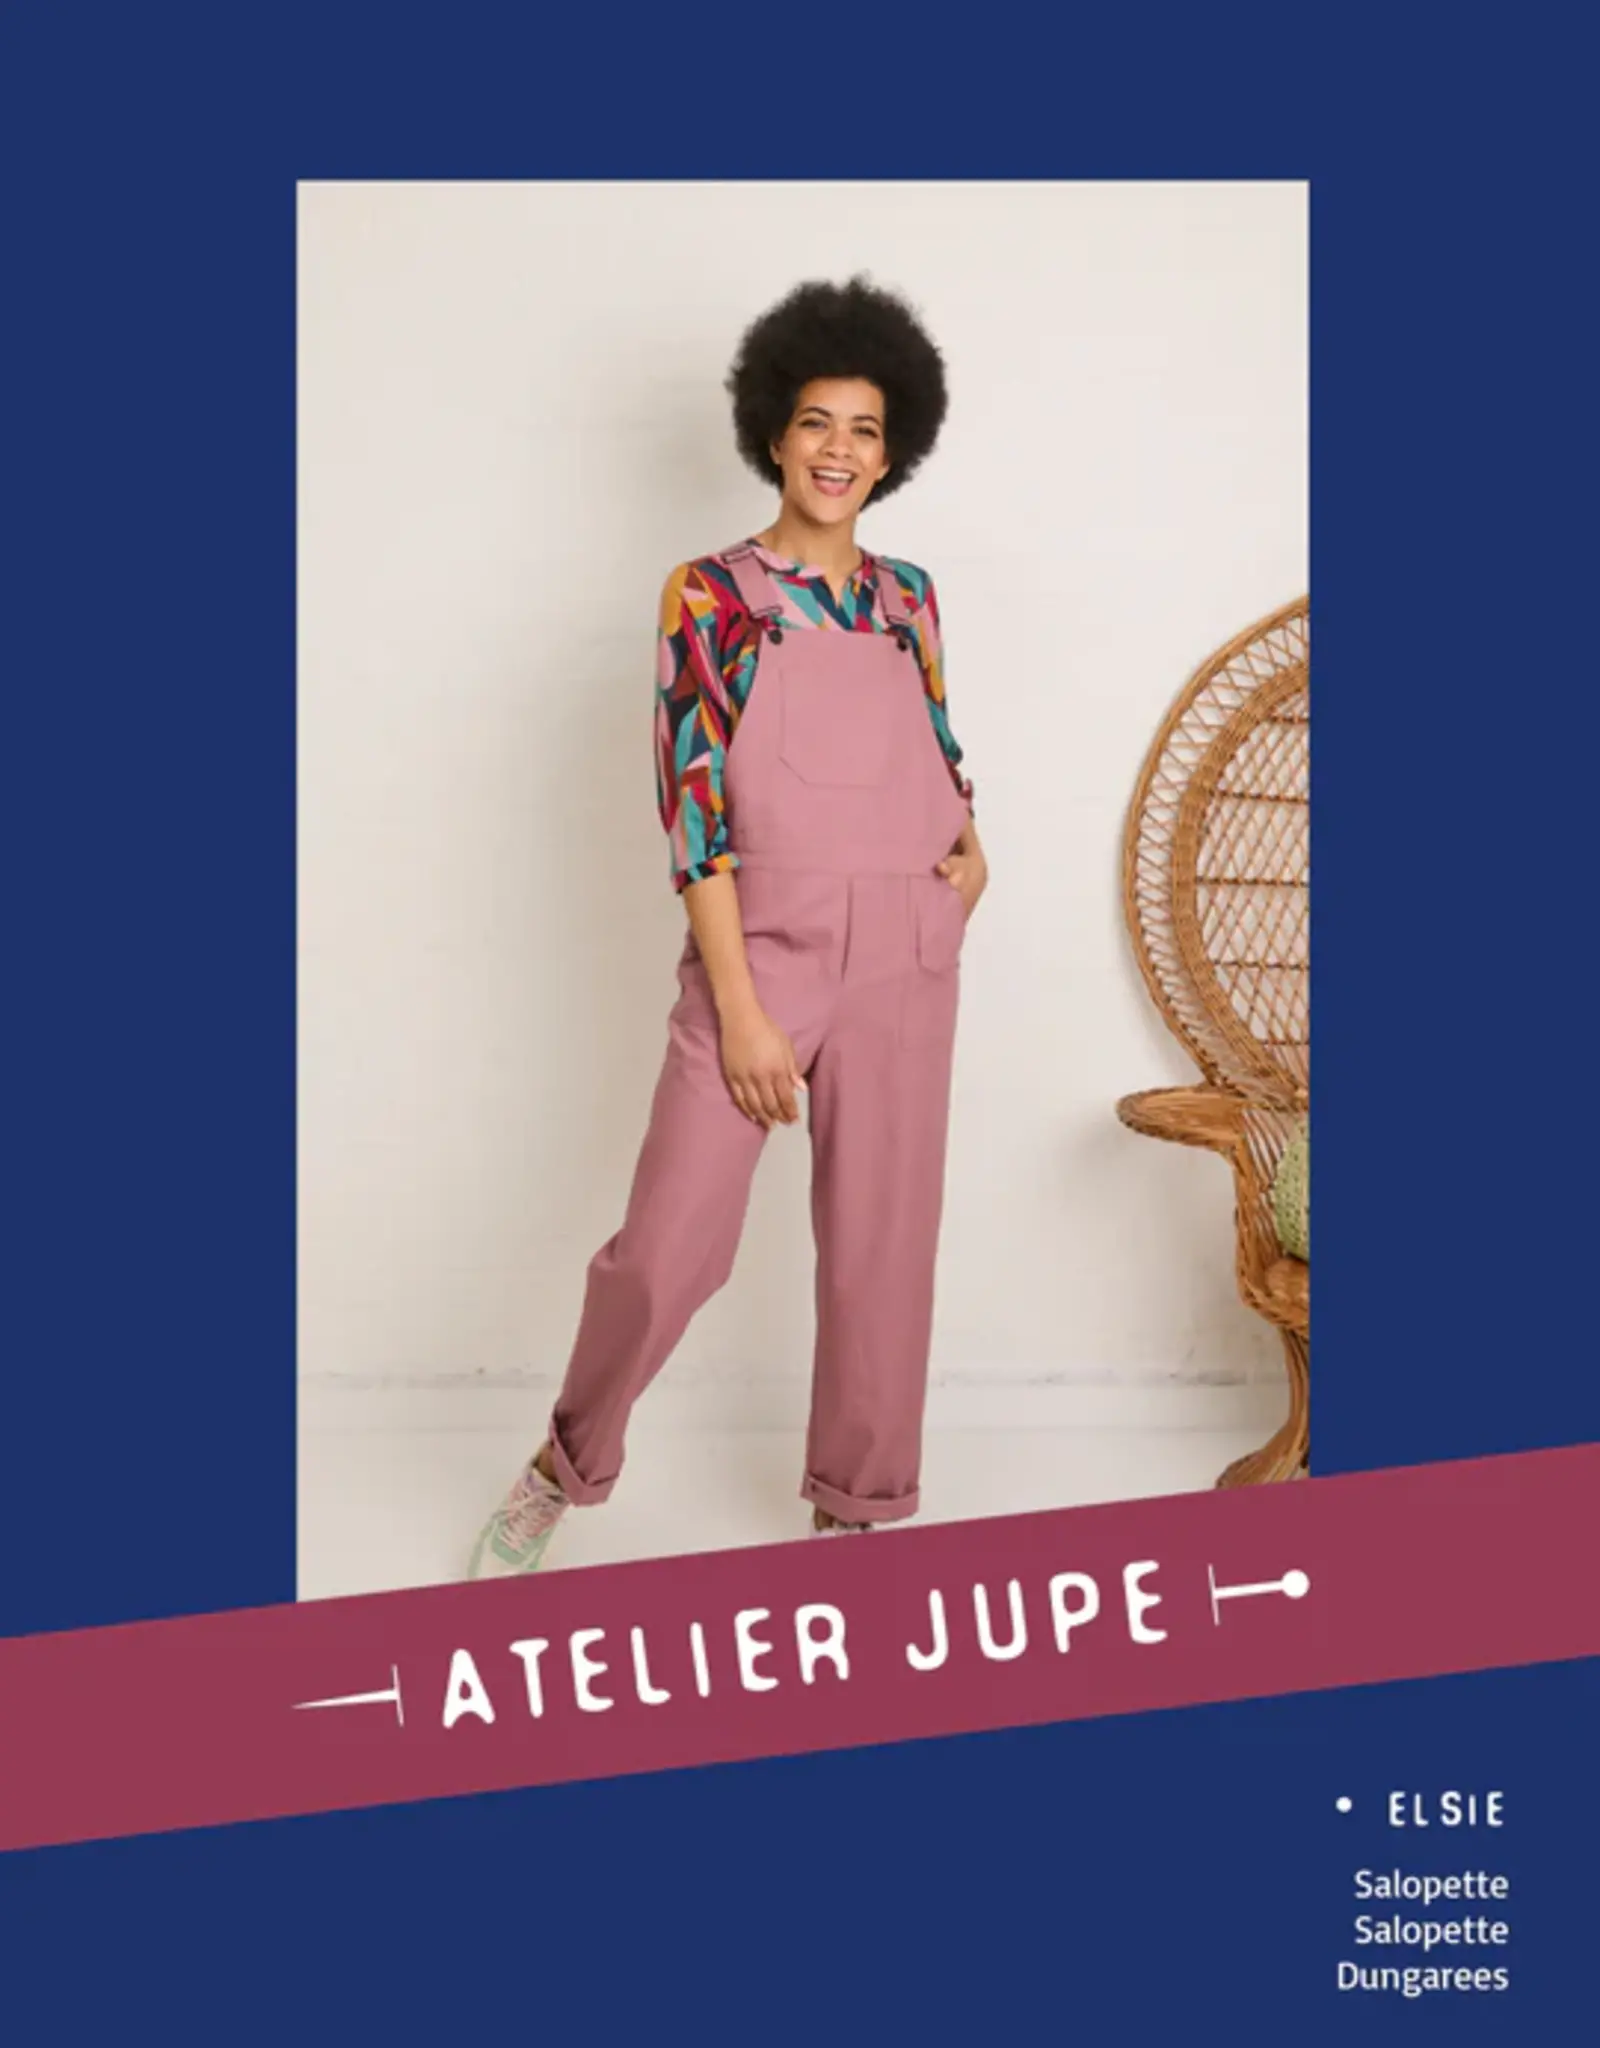 Elsie Salopette -atelier jupe